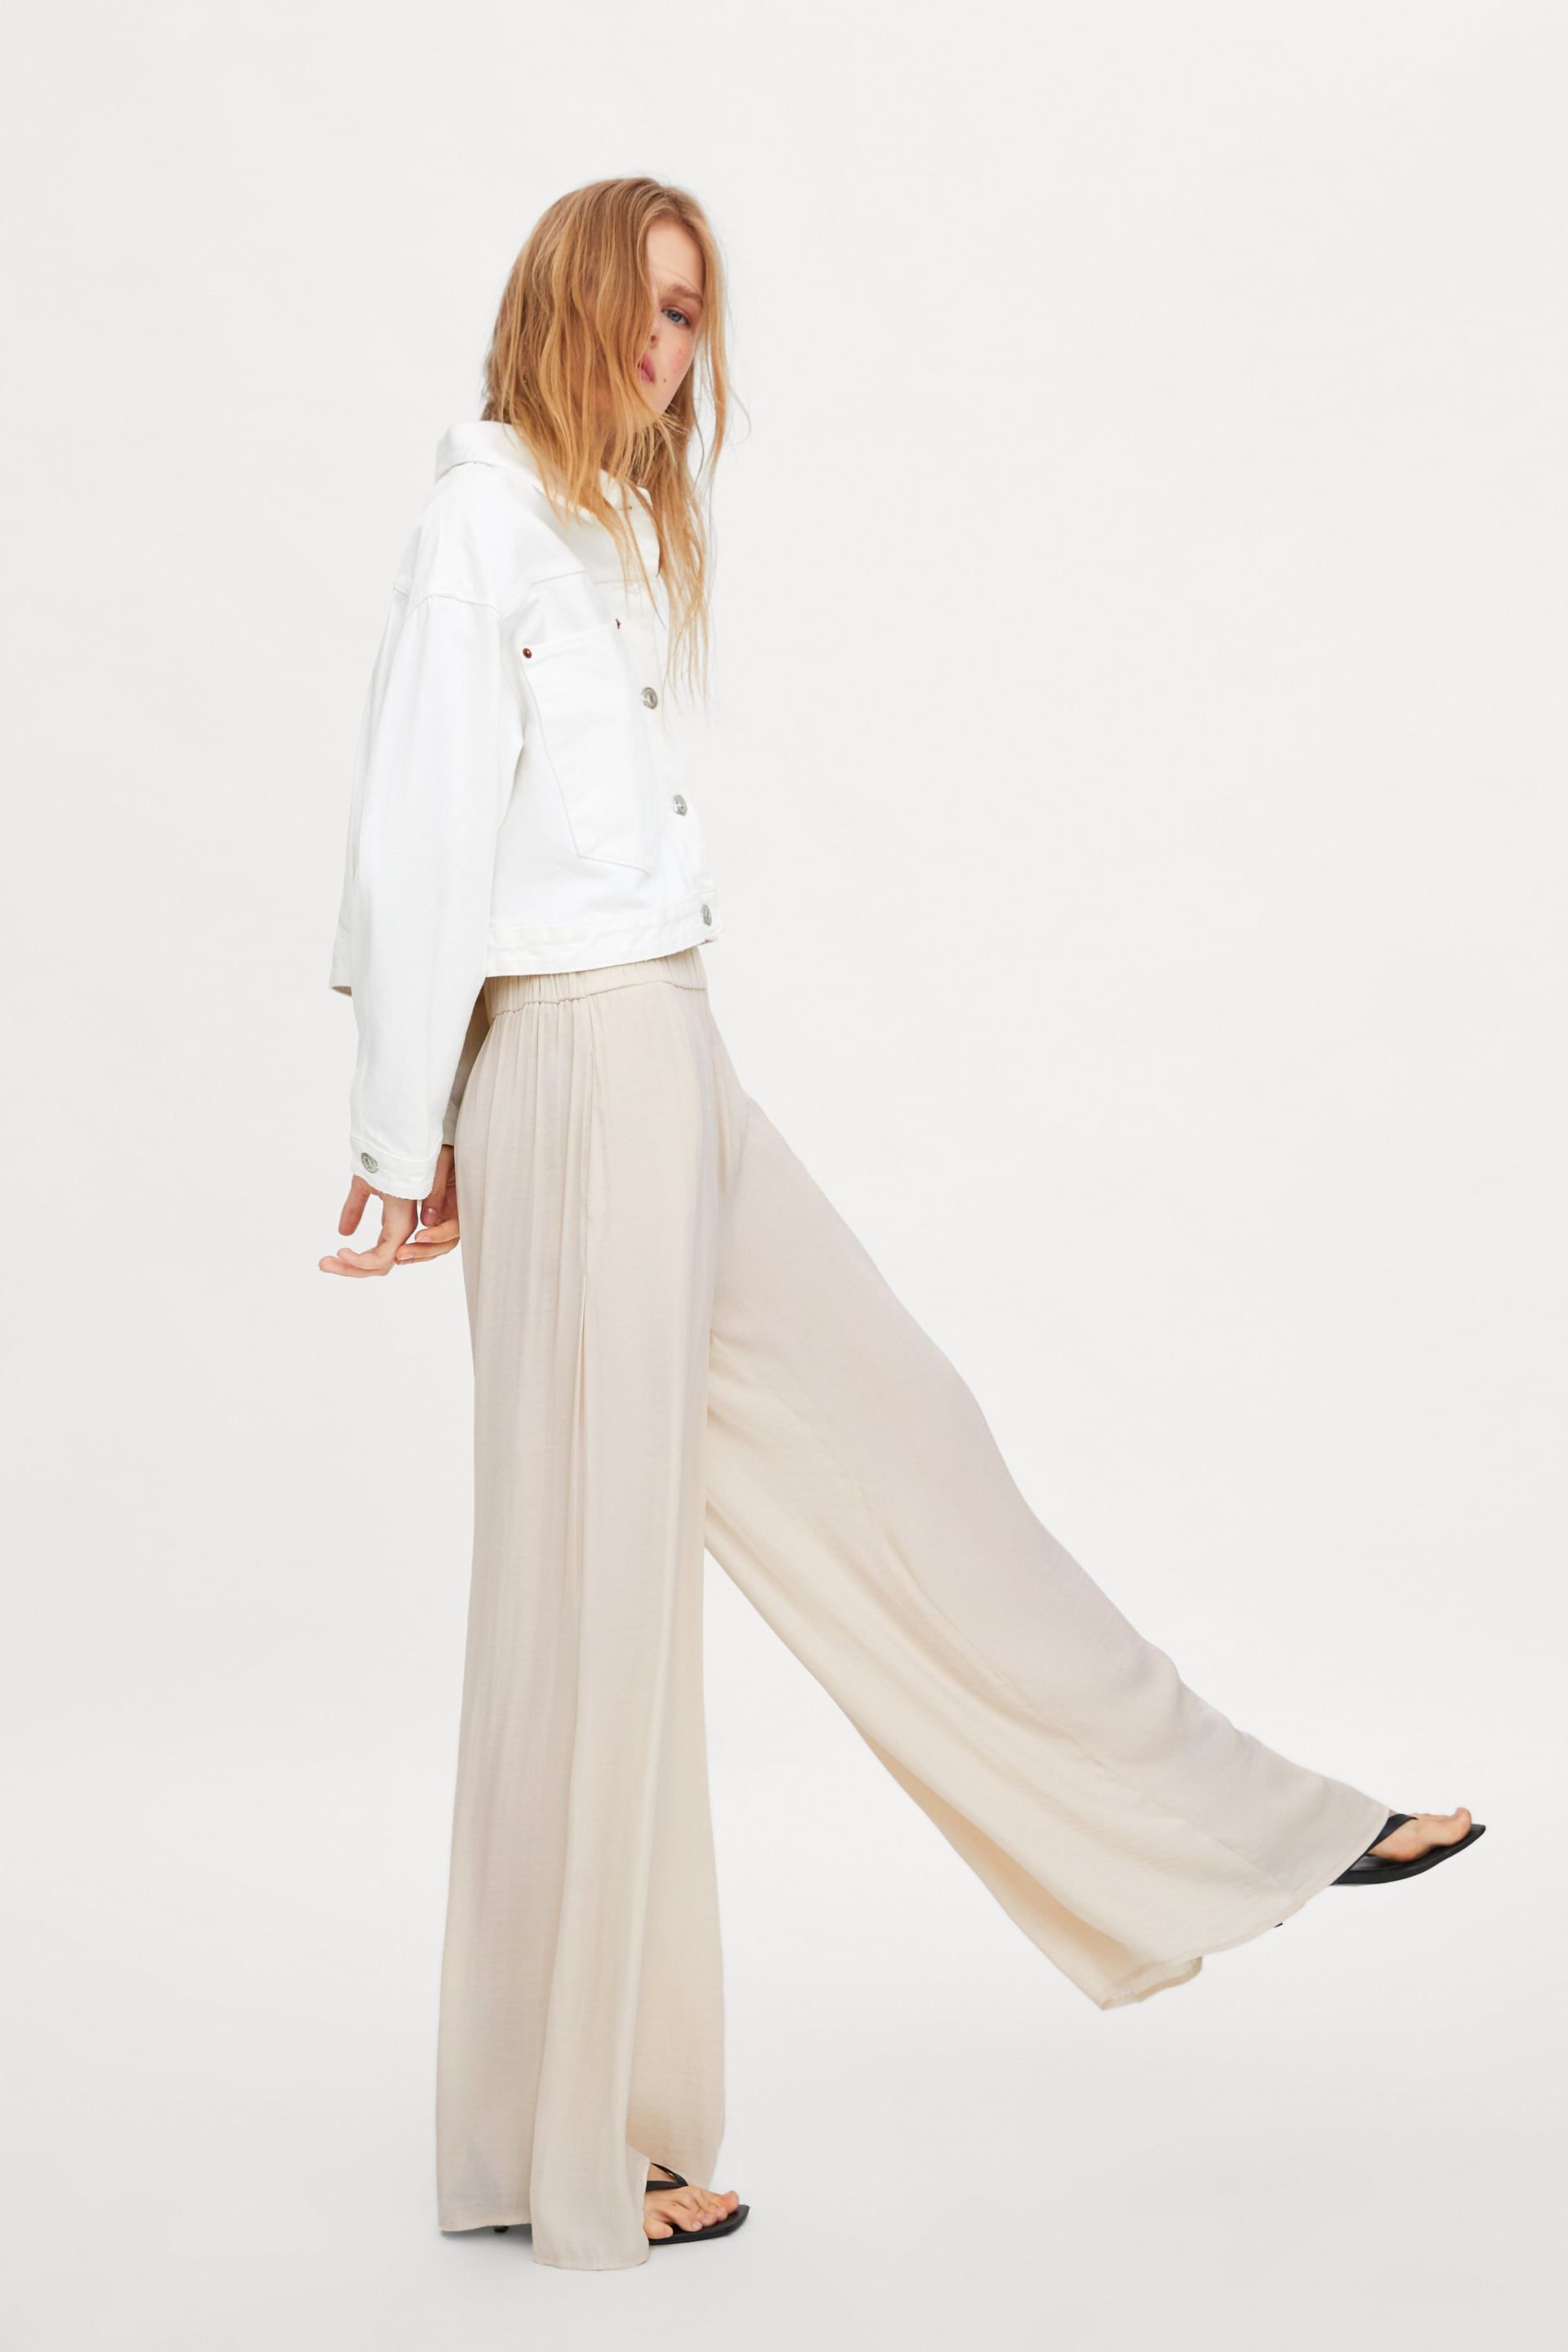 Los pantalones blancos Zara favoritos las 'influencers'